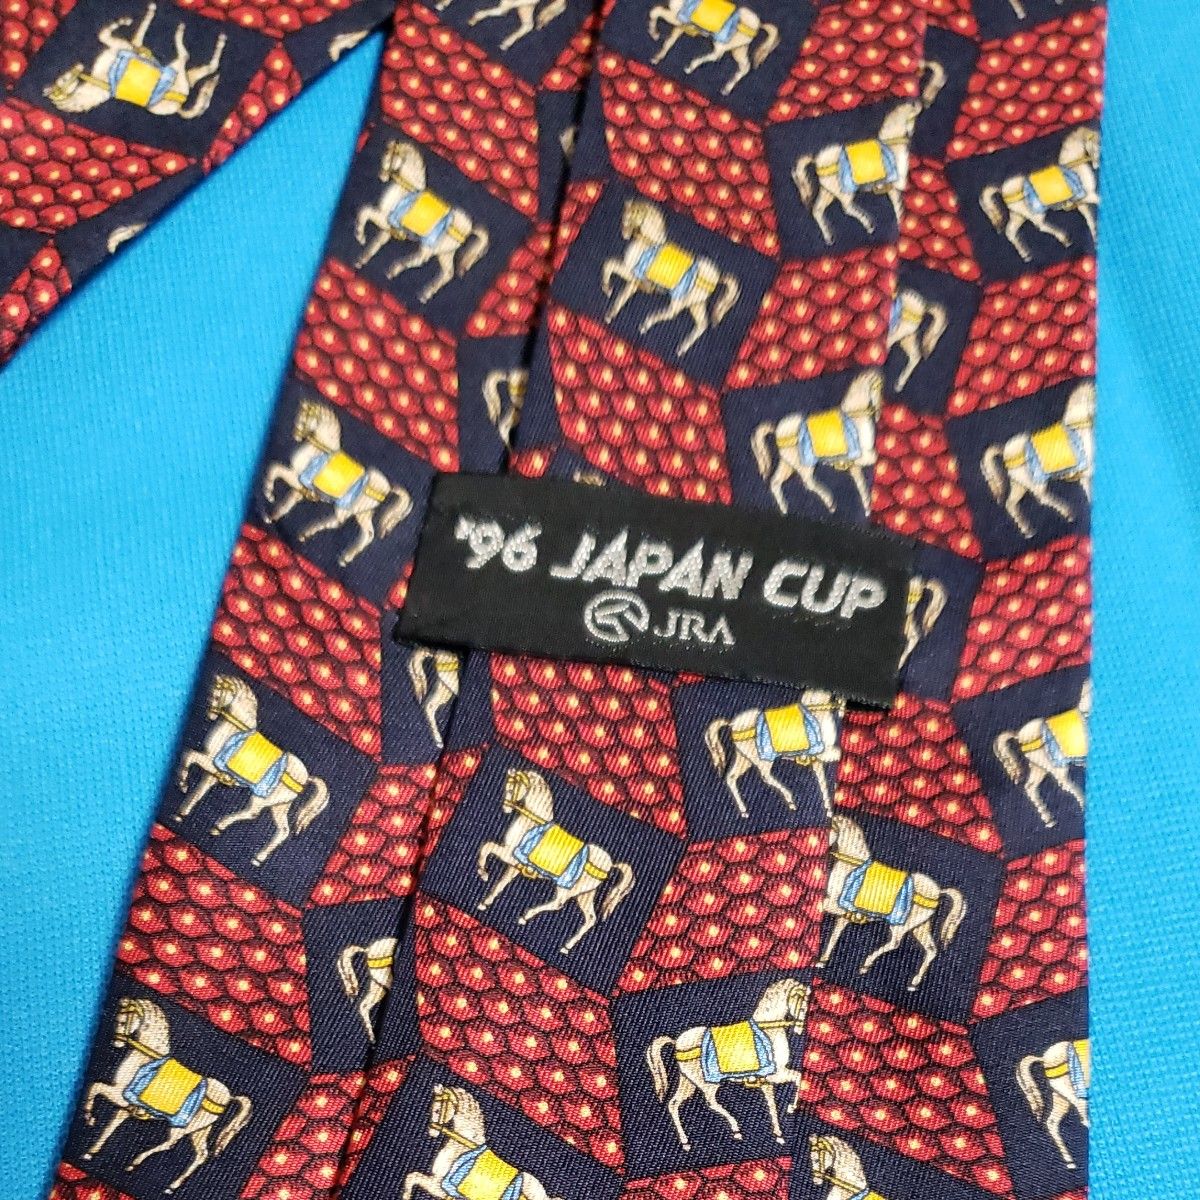 JRA ネクタイ 絹 シルク 馬柄 ホース JAPAN CUP 96 柄物 ネイビー レッド イタリア生地 ジャパンカップ 日本製